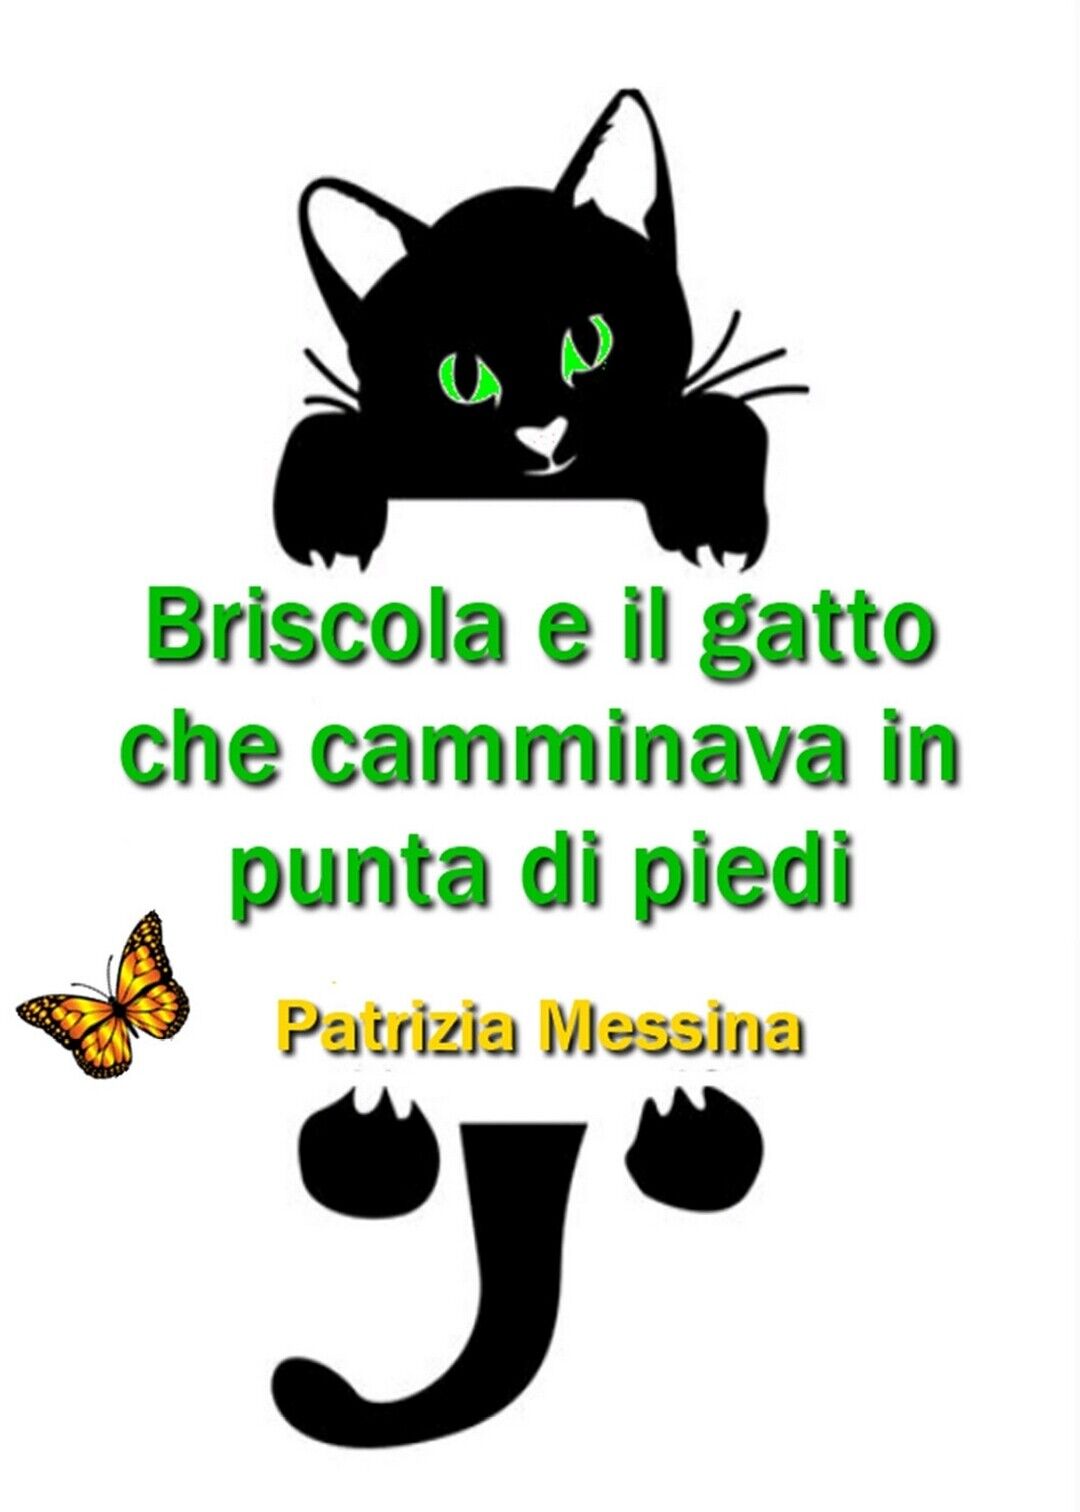 Briscola e il gatto che camminava in punta di piedi  di Patrizia Messina,  2019